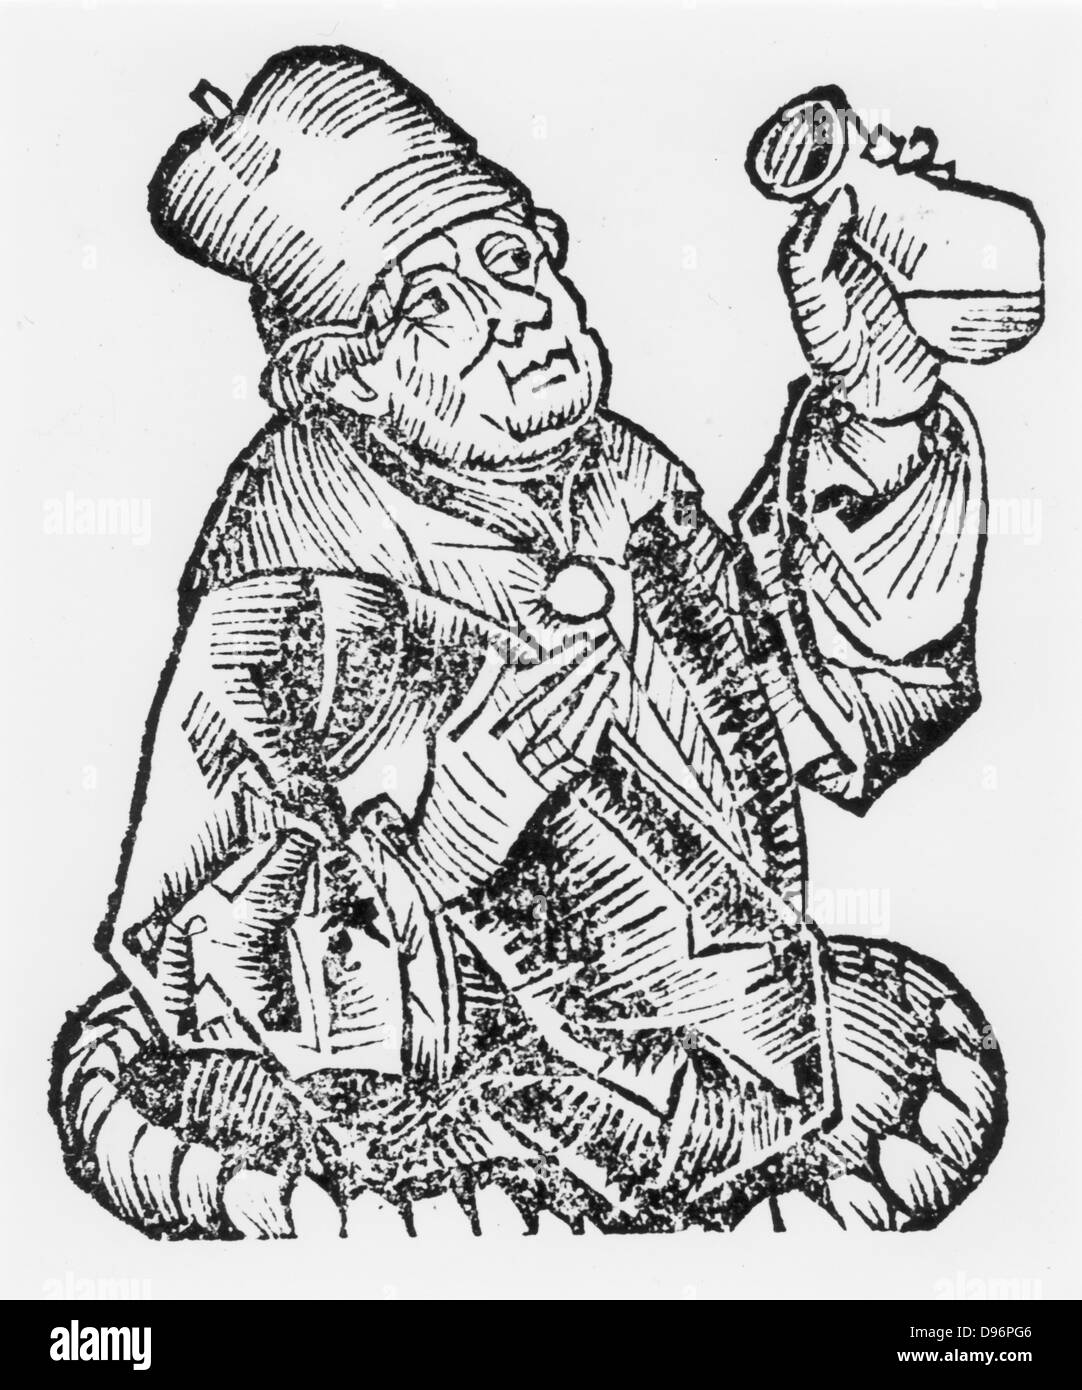 Isaac Judaeus médecin pour les dirigeants de la Tunisie. 9e-10e siècle. Judaeus (C855-C955) a été l'un des premiers dont les œuvres ont été traduites de l'arabe au latin. À partir de 'Liber Chronicarum mundi' par Hartmann Schedel (Chronique de Nuremberg), Nuremberg, 1493. Gravure sur bois. Banque D'Images